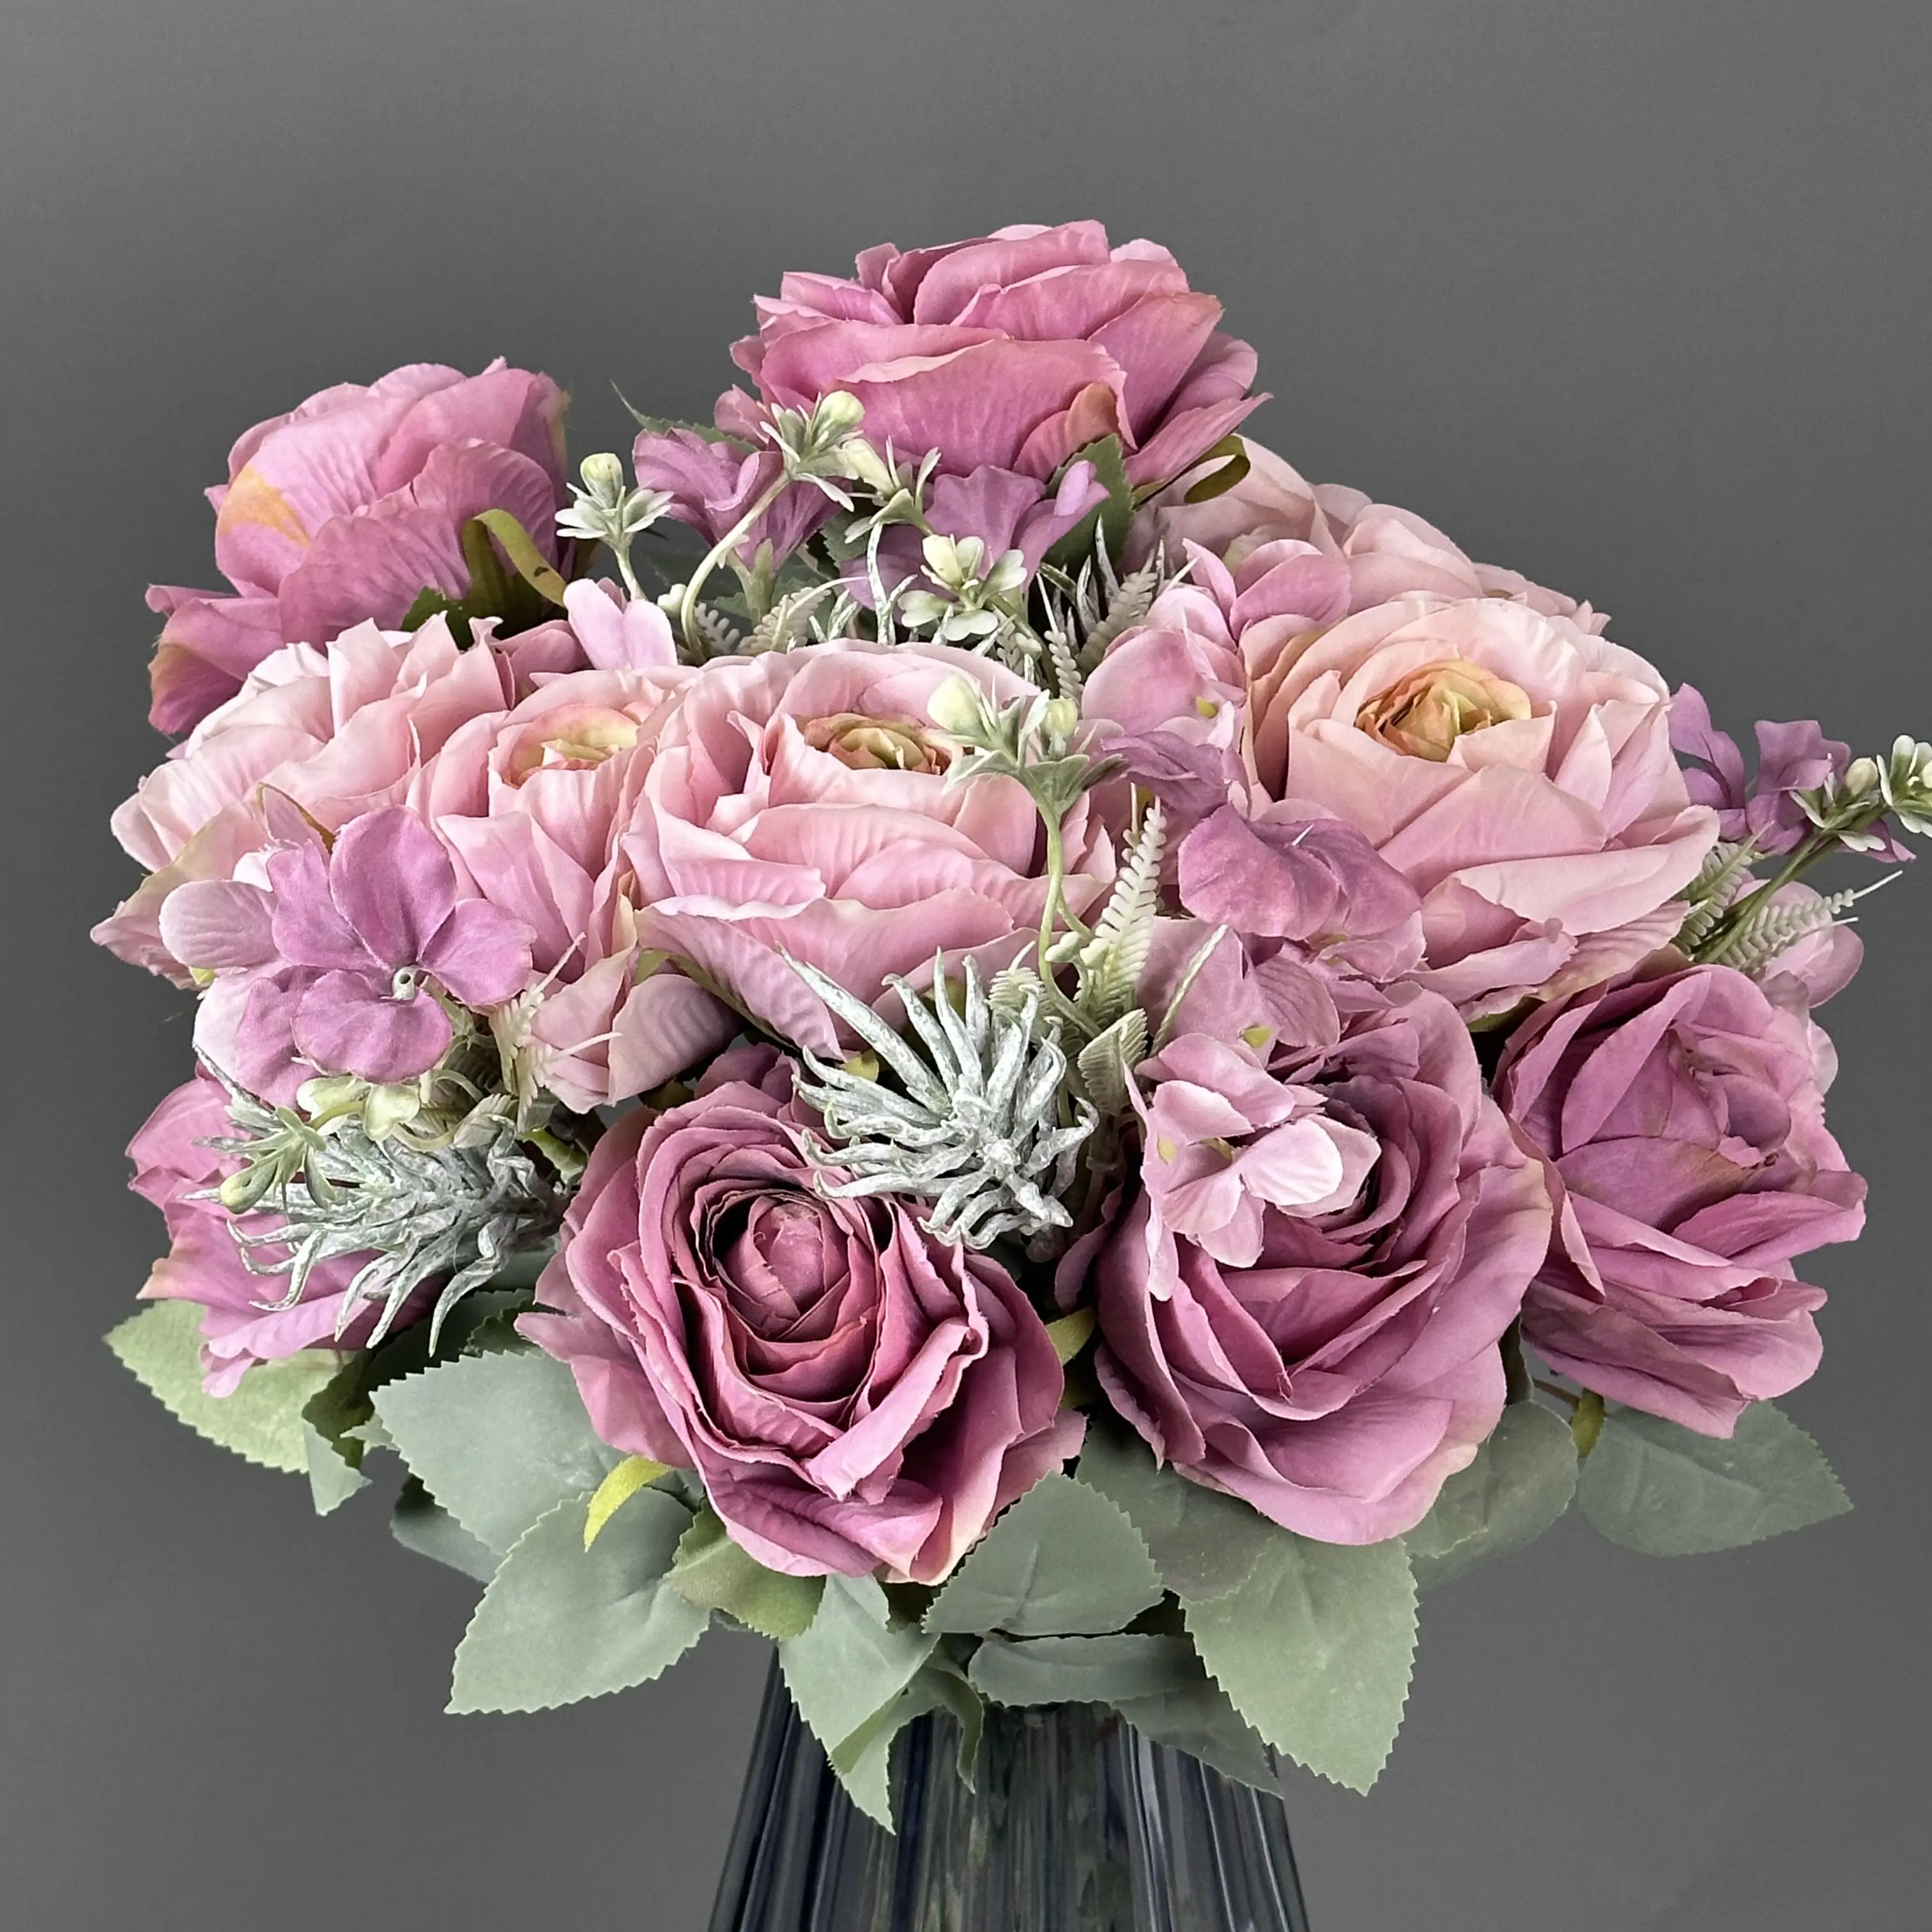 Fiore di rosa australiana bouquet rosa artificiale fiore decorazione di nozze tavolo centrotavola per la decorazione e il regalo